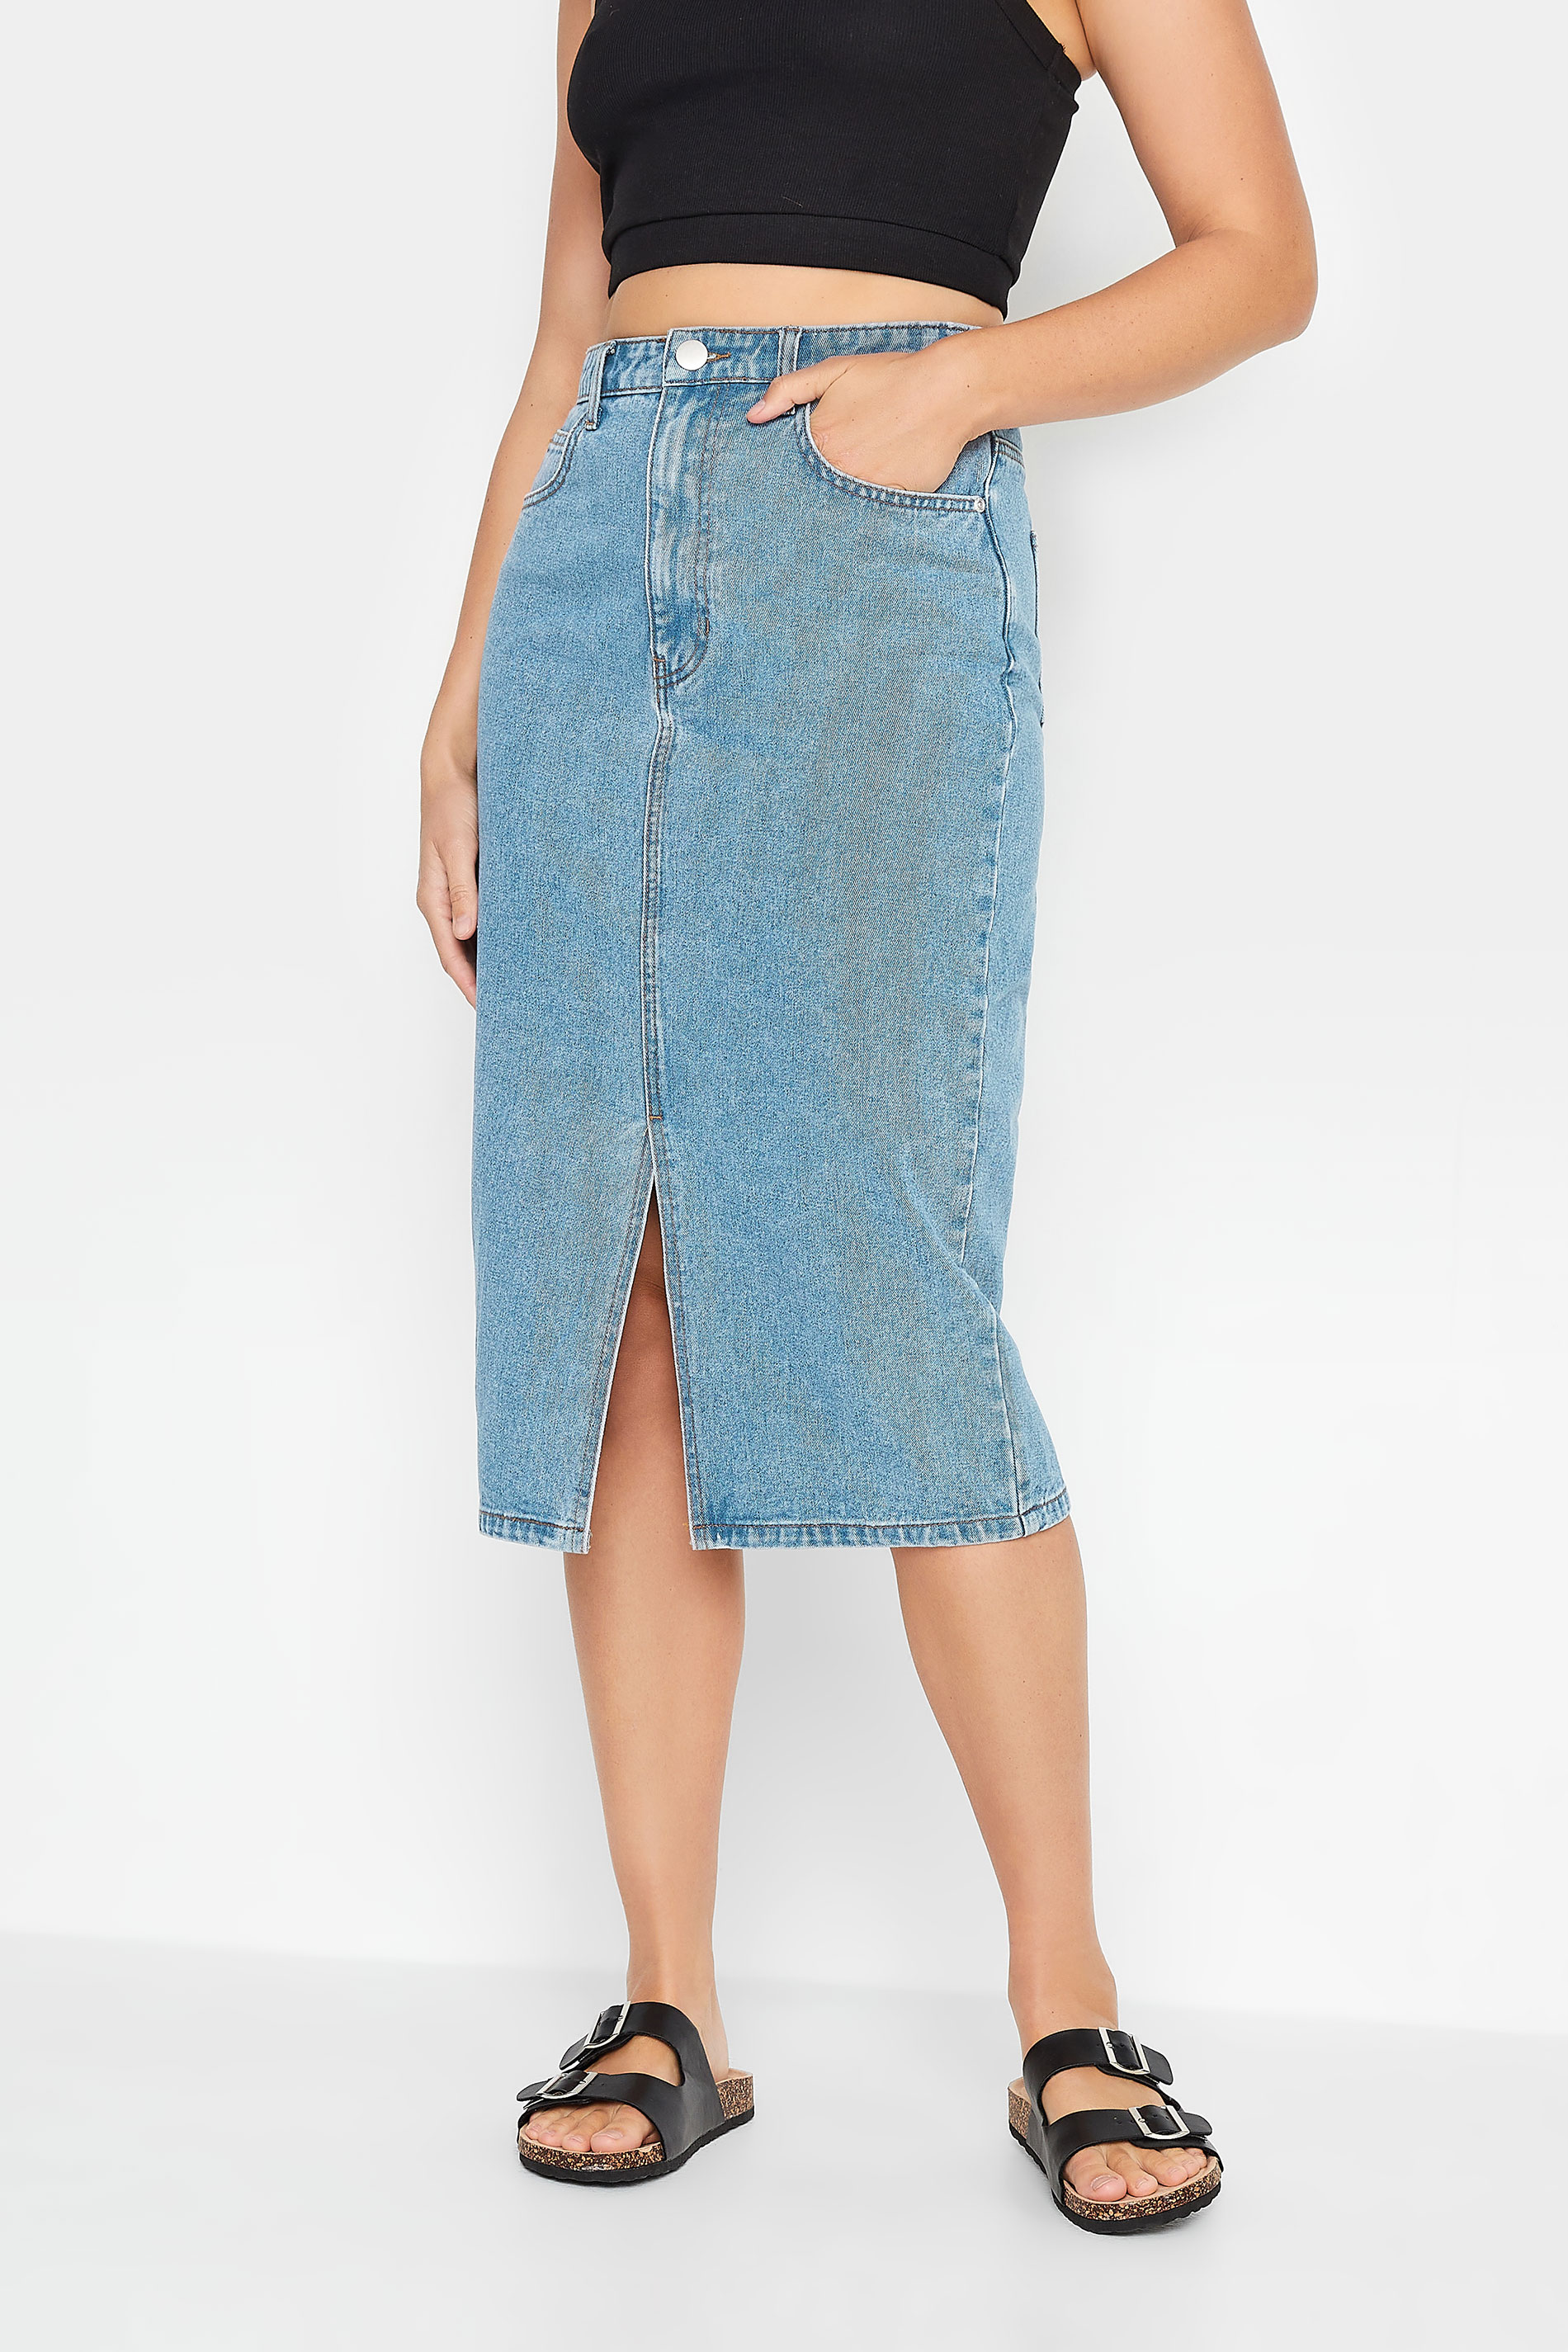 LTS Tall Blue Denim Midi Skirt | Long Tall Sally  1